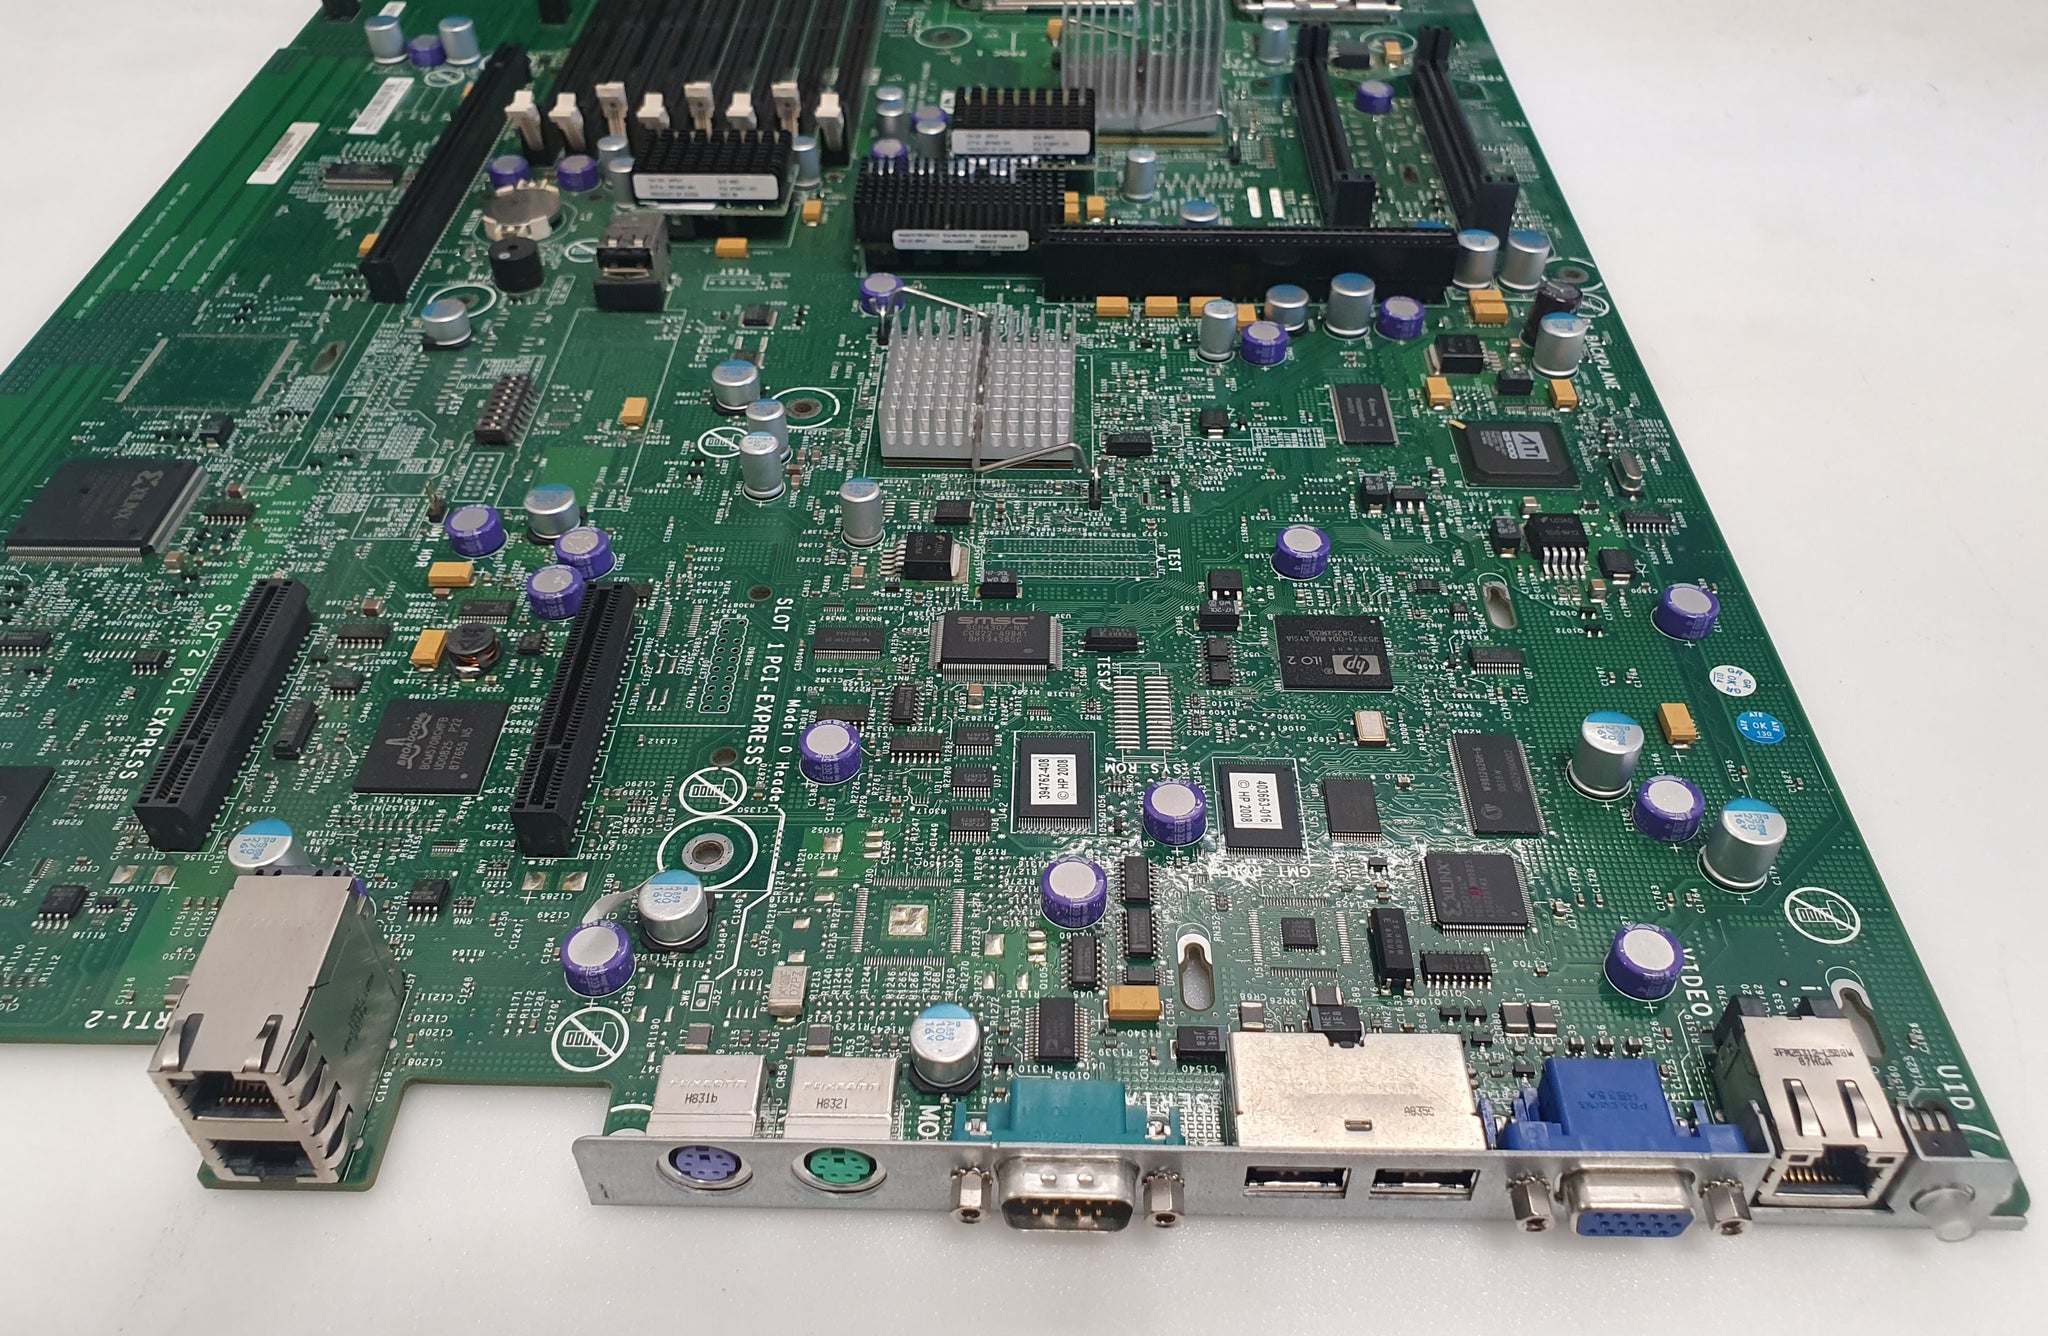 HP Proliant DL380 G5 - System board 013096-001 Motherboard